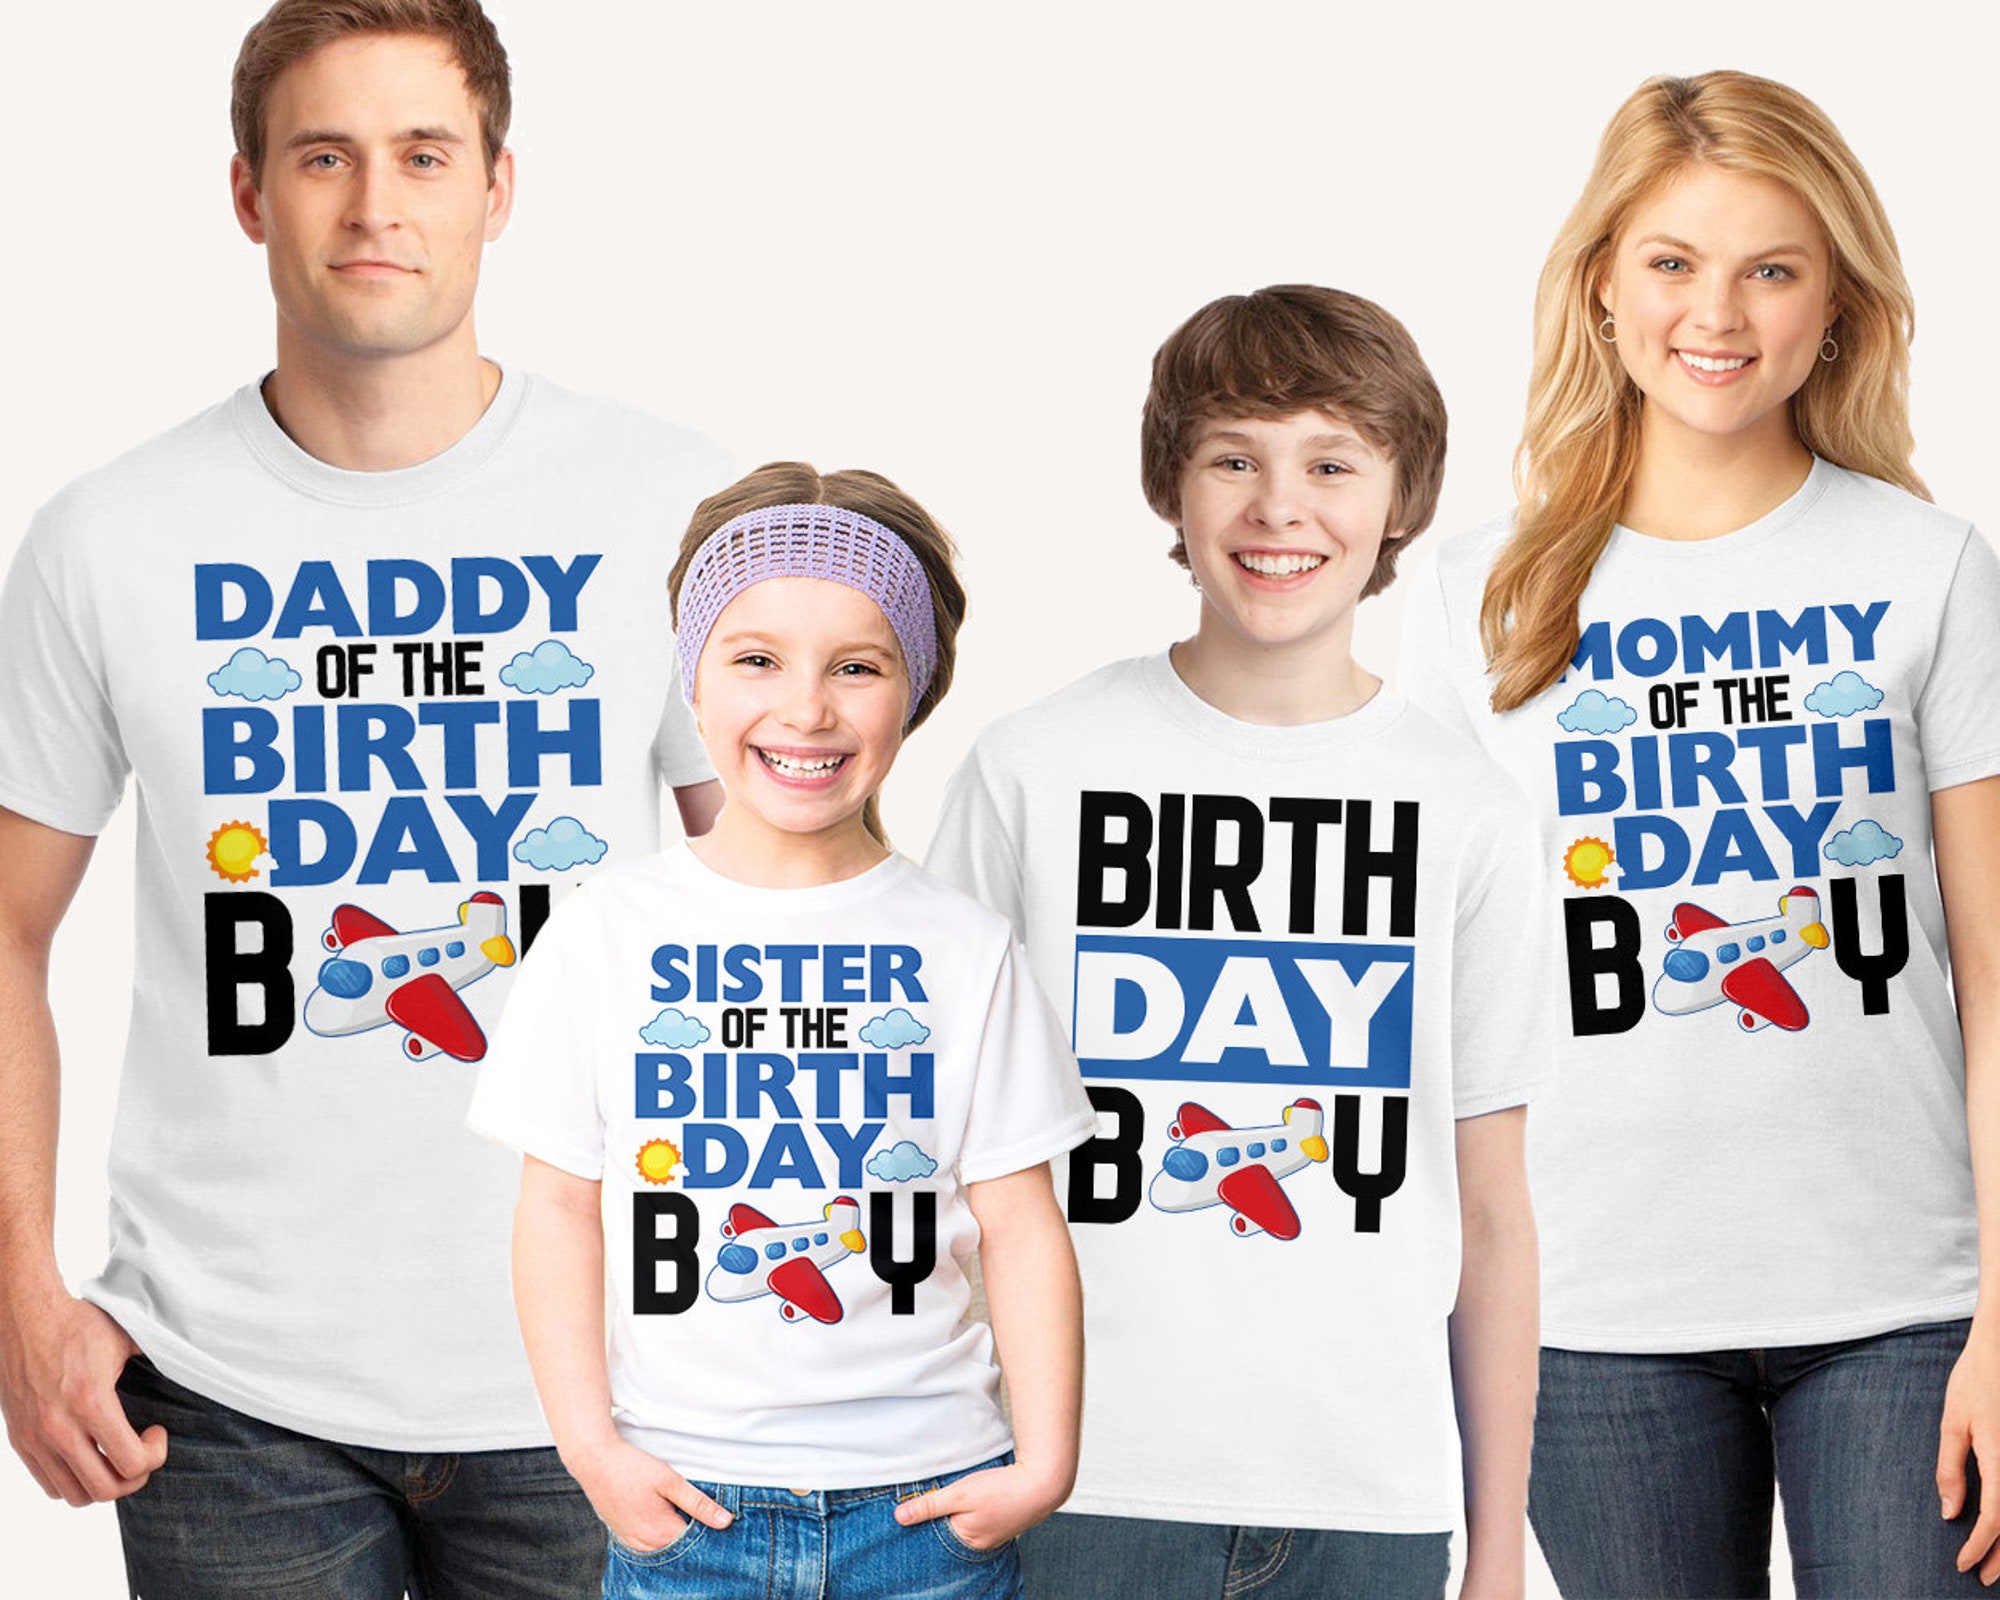 Airplane Birthday Shirt, Airplane shirt, Plane Birthday shirt, Airplane Matching Family Birthday shirts, Aviation Birthday Shirt, flying tee